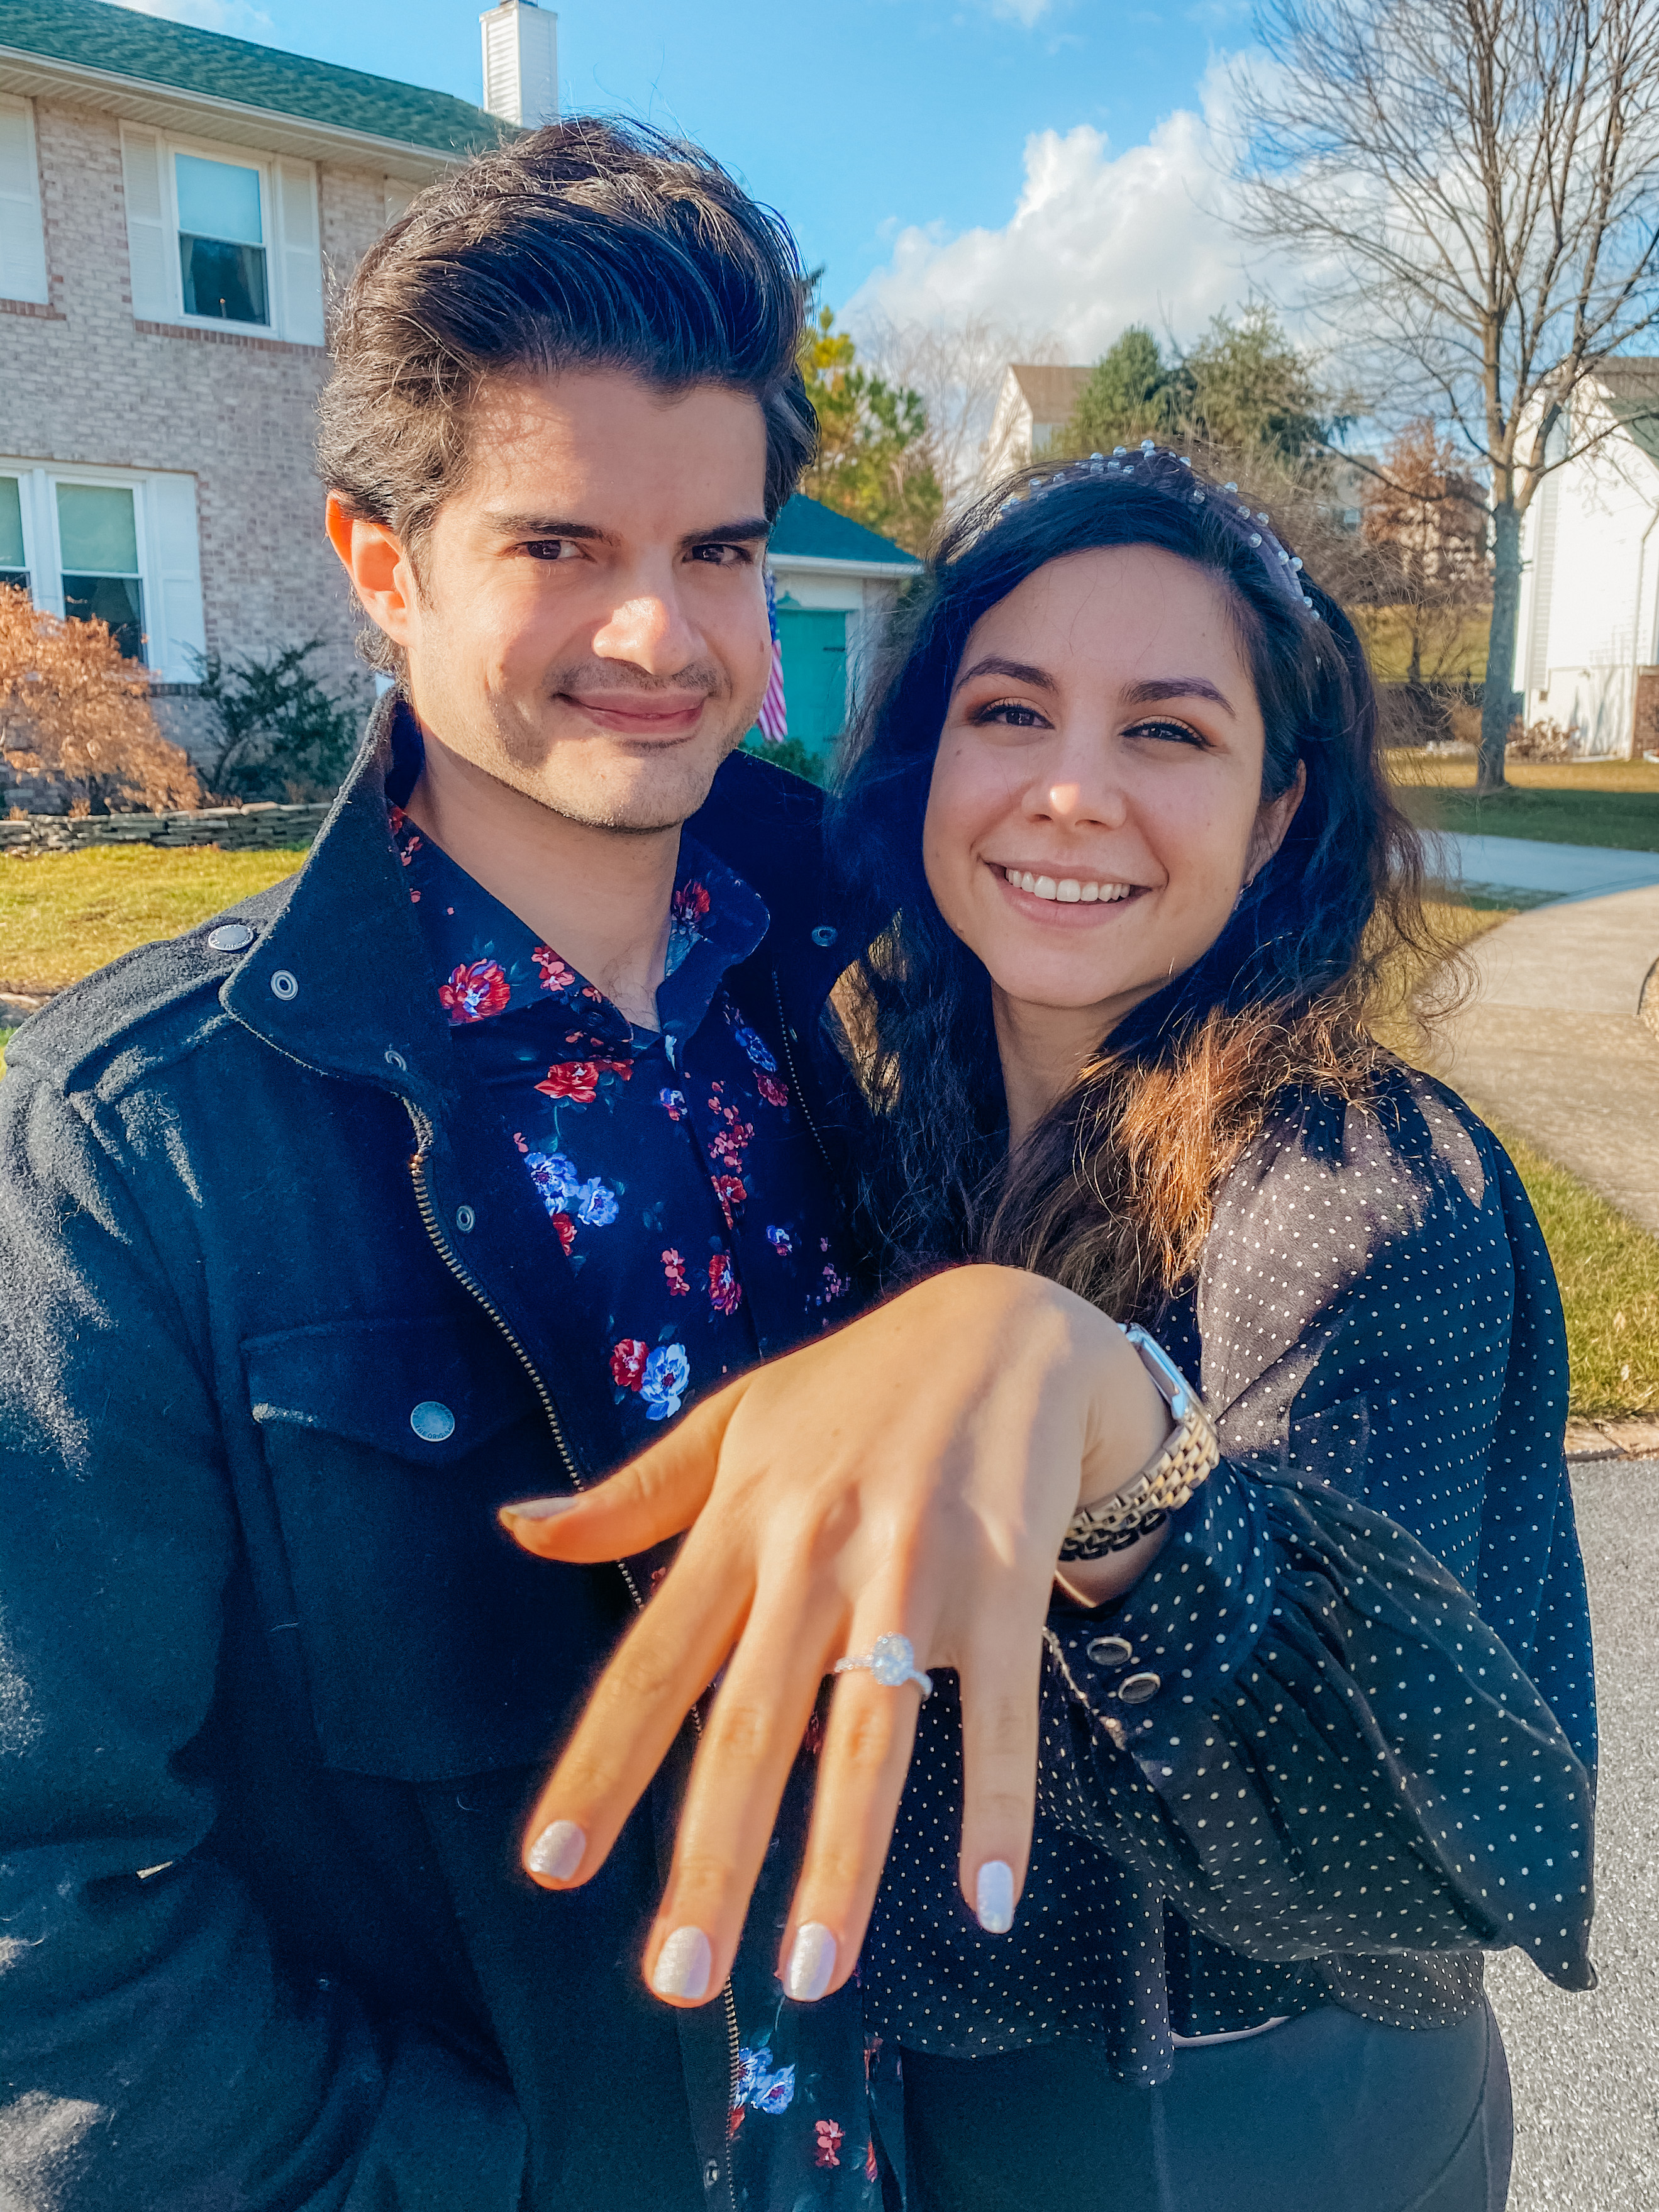 engaged!